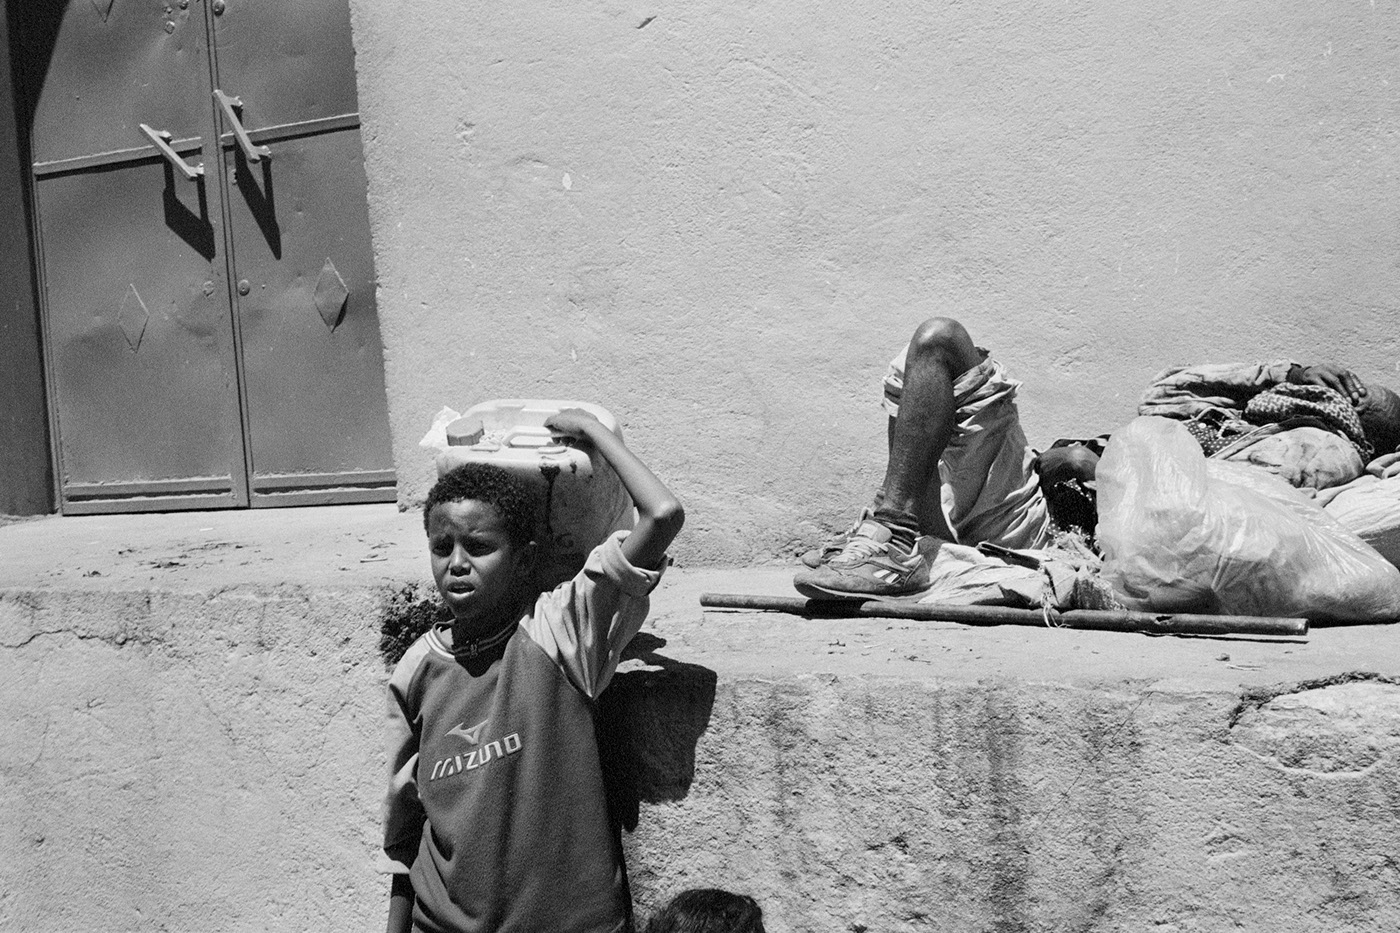 ethiopia africa black and white Street people street life hardship Addis Ababa monochrome 35mm photo habesha